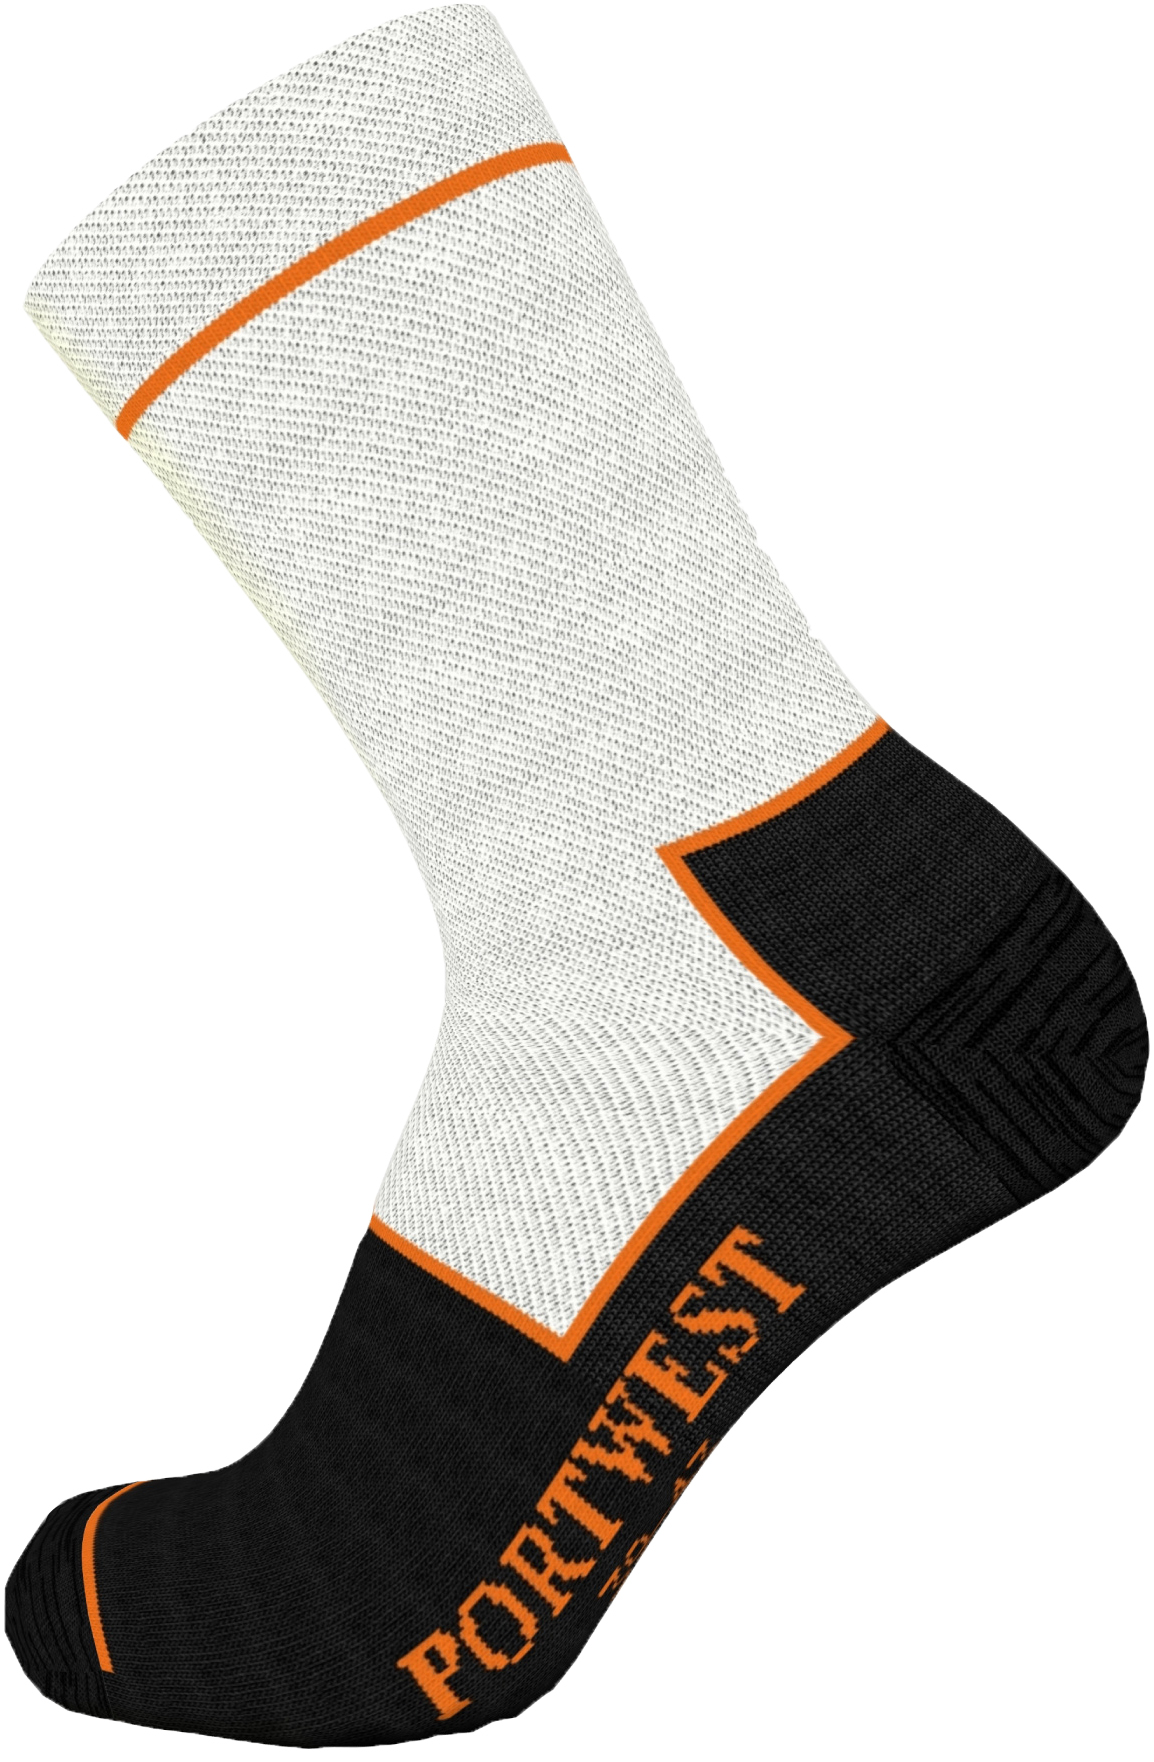 SK26 Cut Resistant Sock | Concept Products Ltd